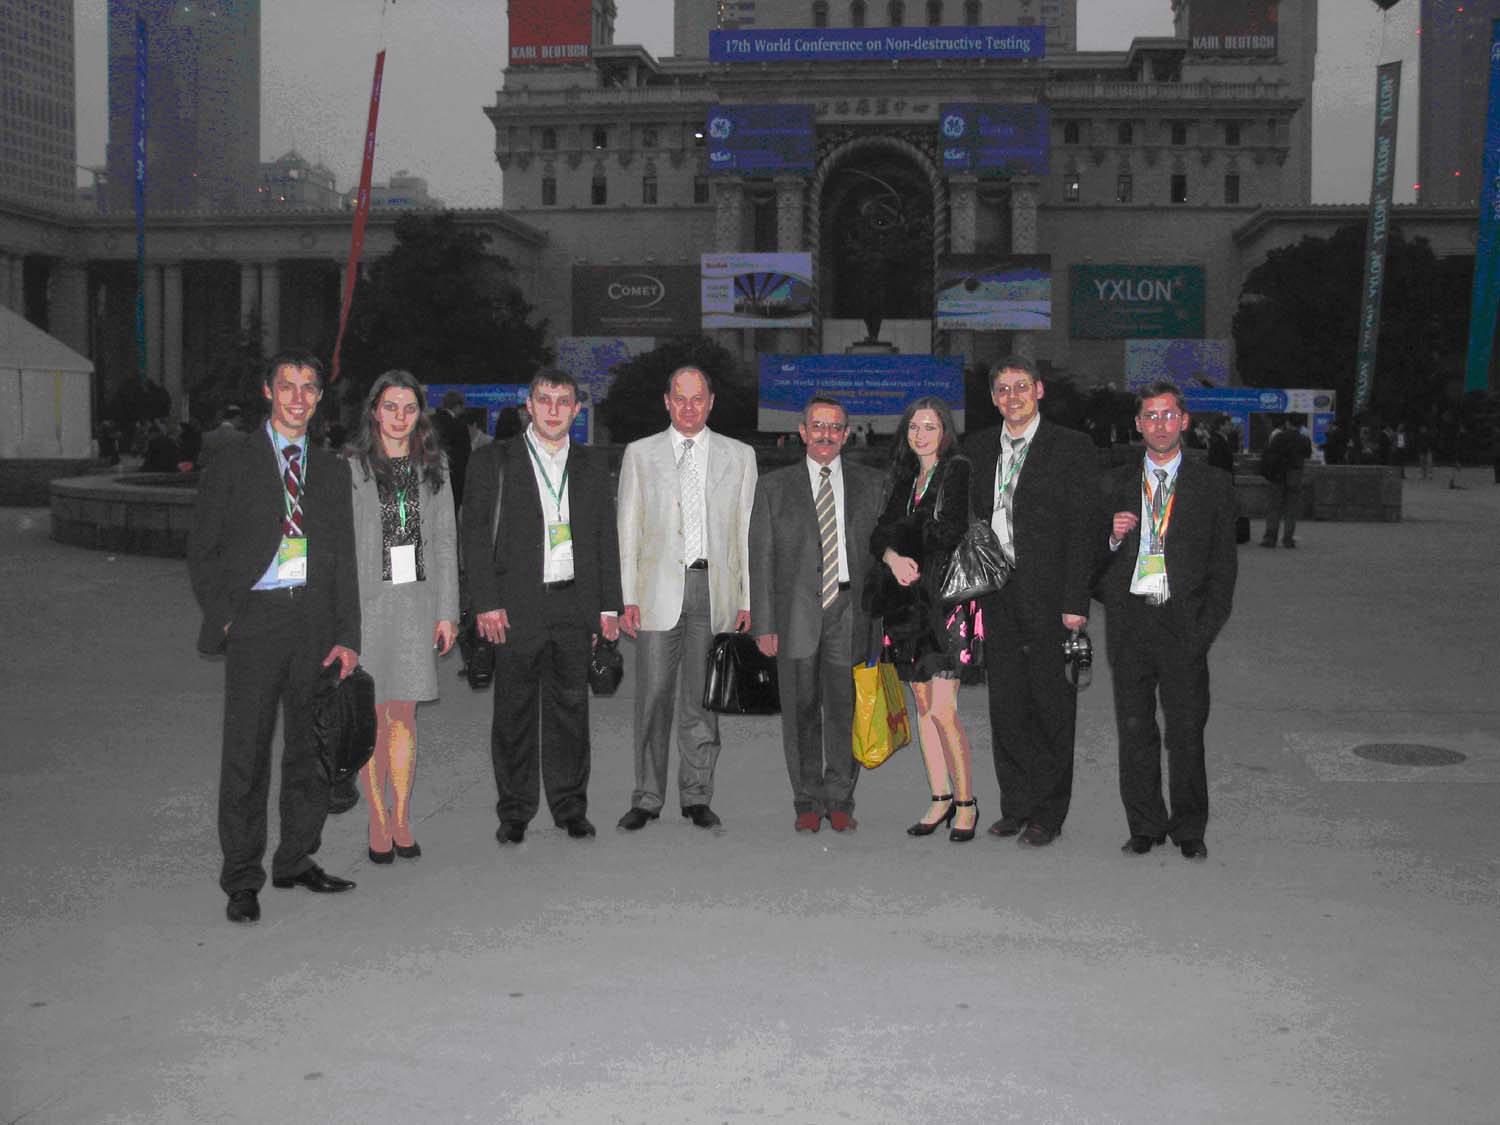 Делегация OKOndt Group (НПФ «Промприлад») на 17 Всемирной конференции НК, Шанхай, Китай, 2008 год